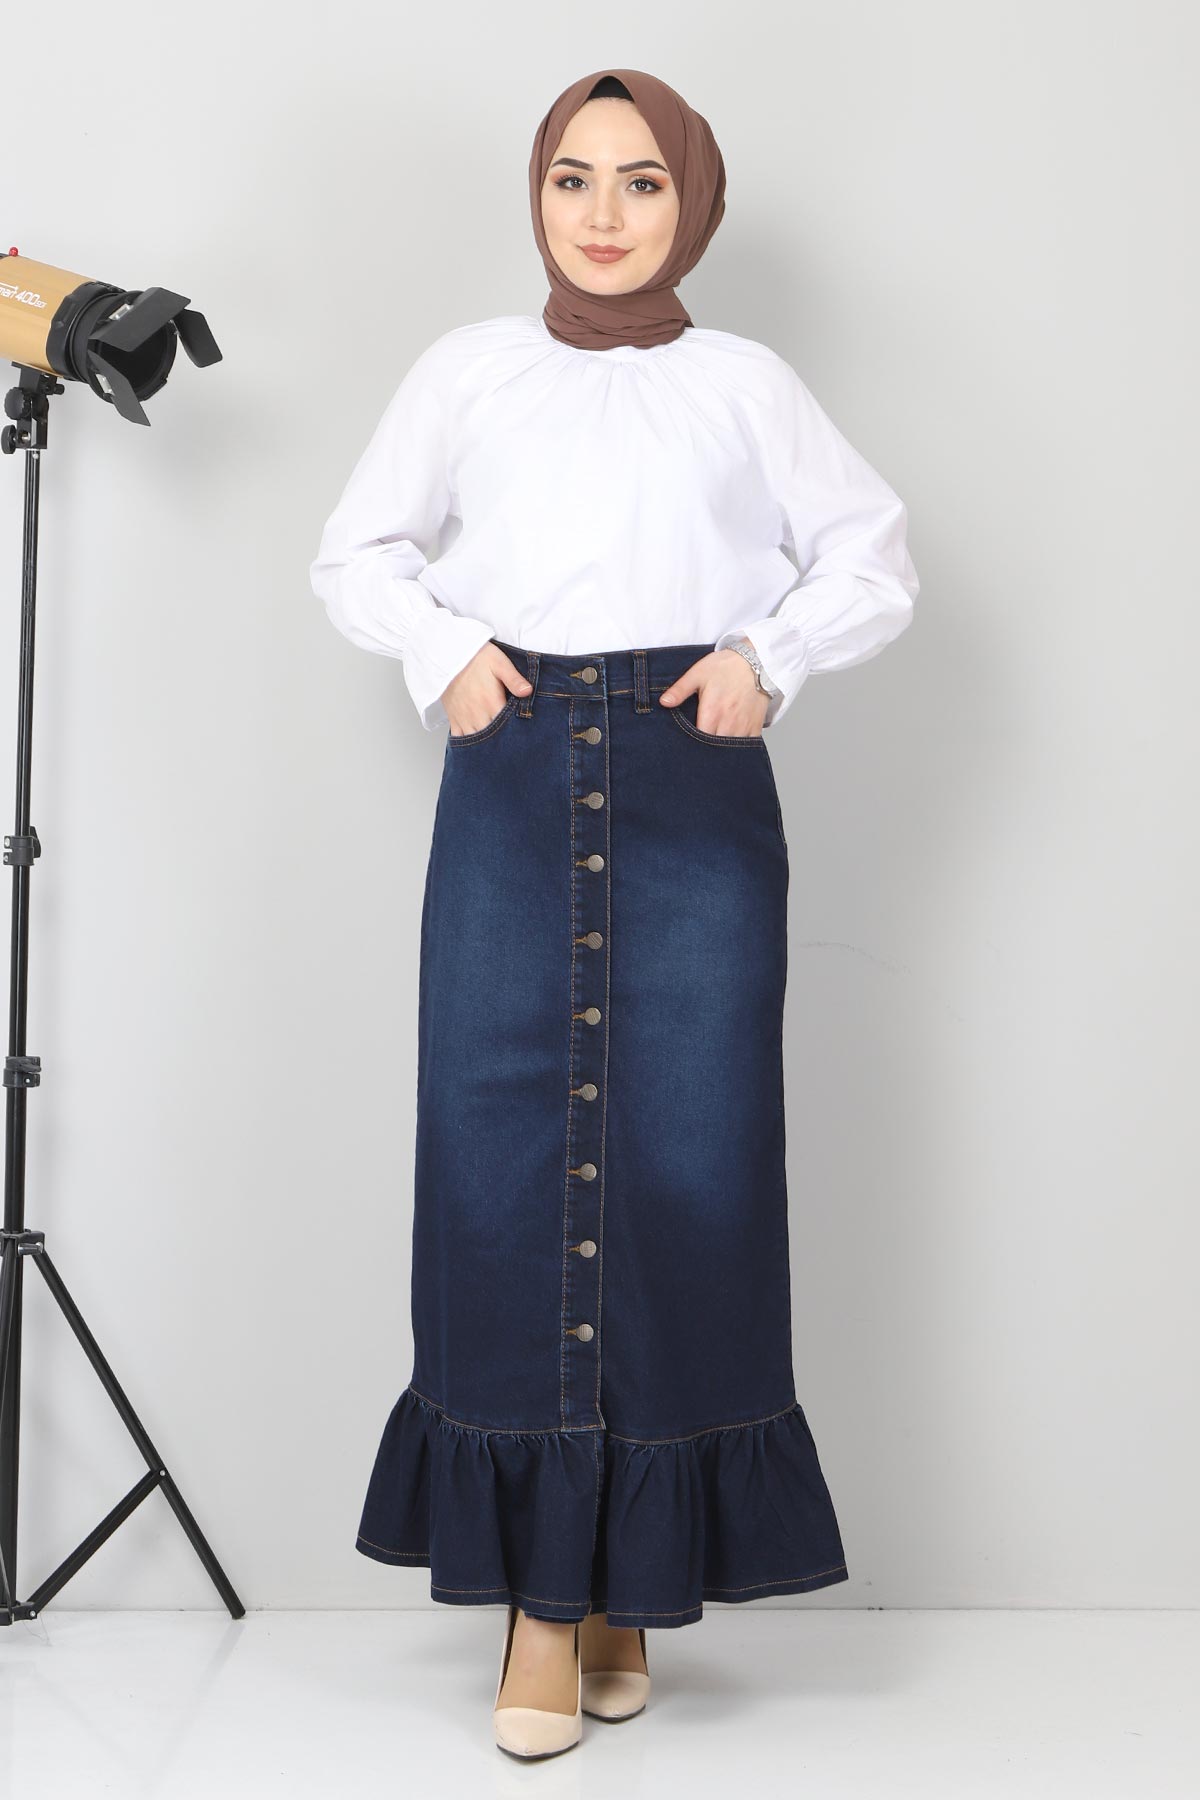 Tesettür Dünyası - Ruffle Buttoned Jeans Skirt TSD22027 Dark Blue